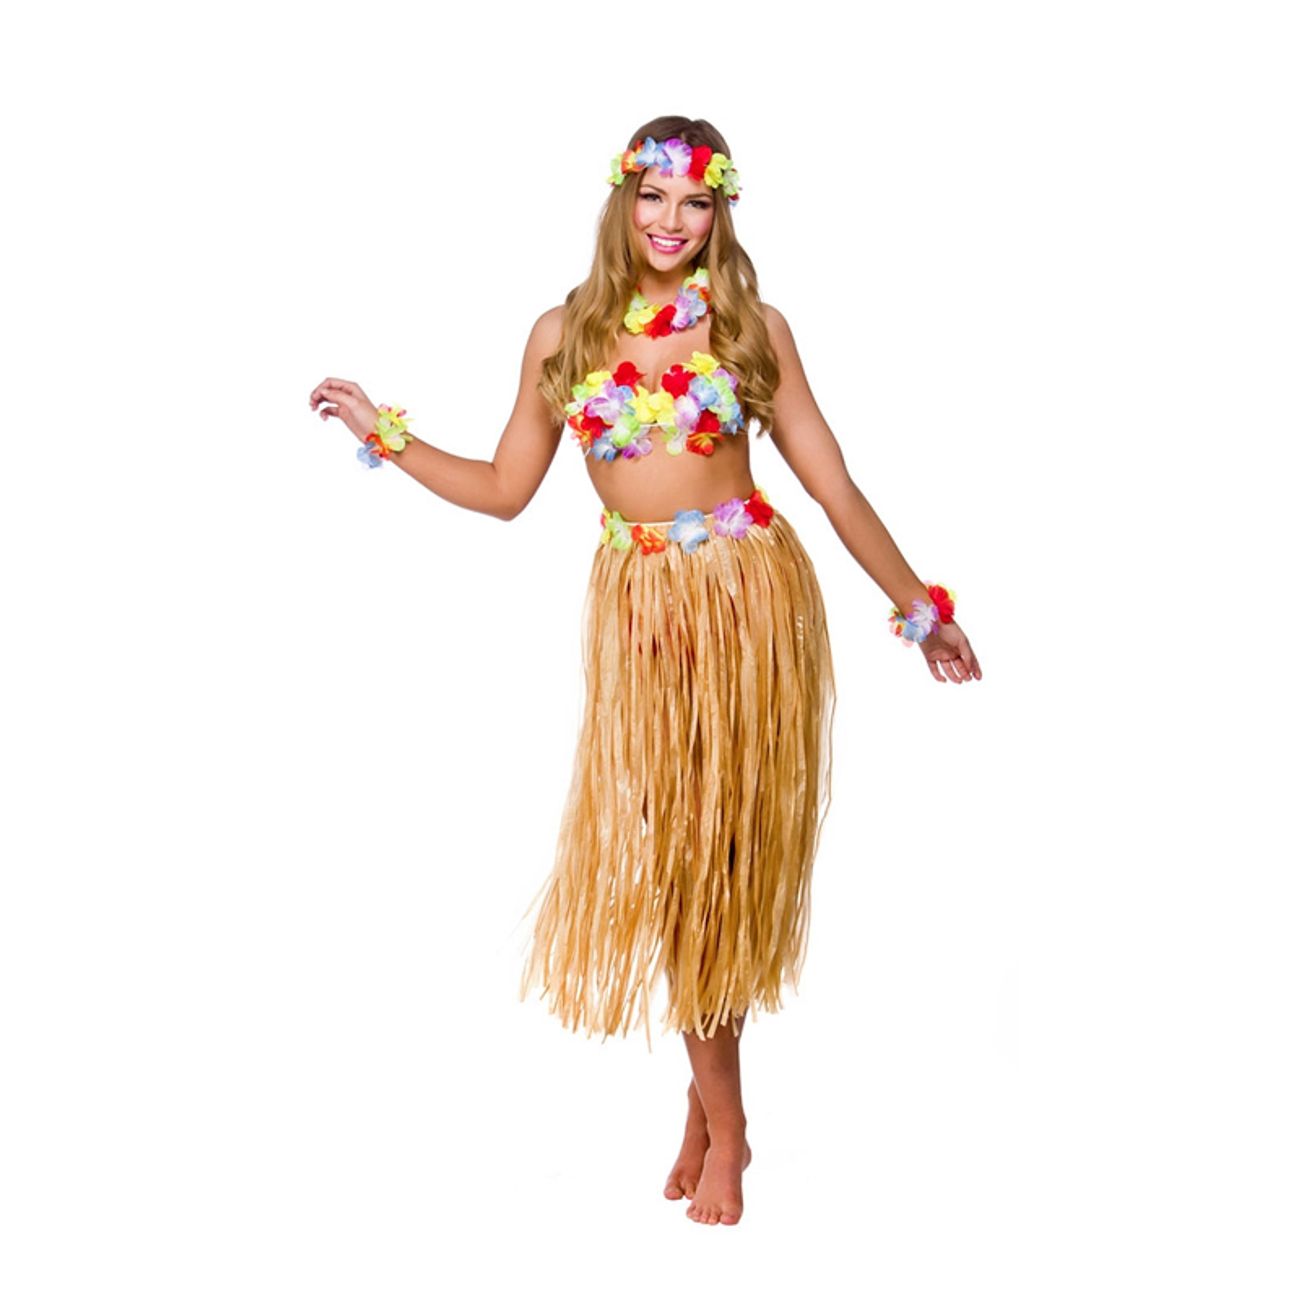 Bore Godkendelse Baglæns Hawaii Partypige Kostume | Partykungen